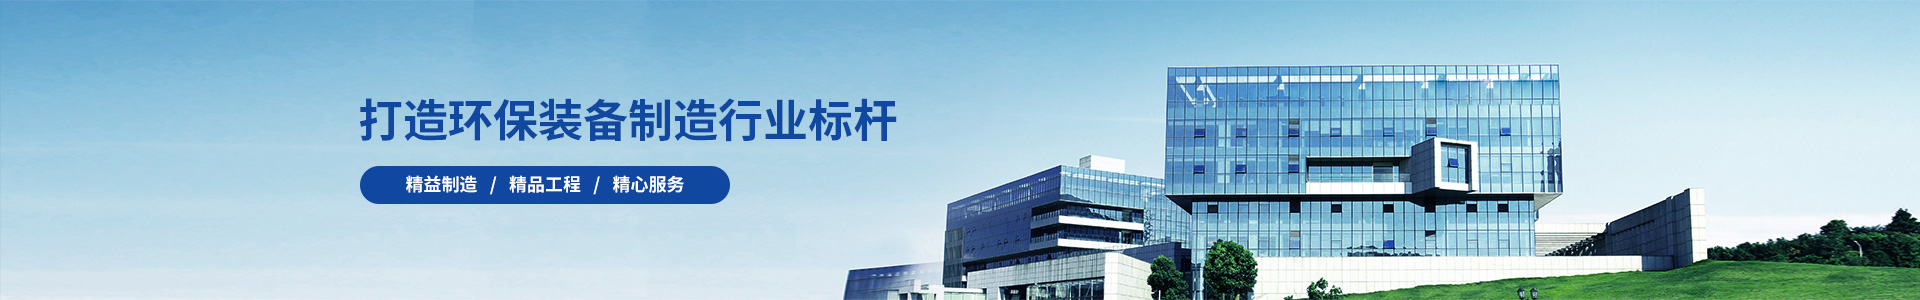 河南省雪峰环境工程有限公司